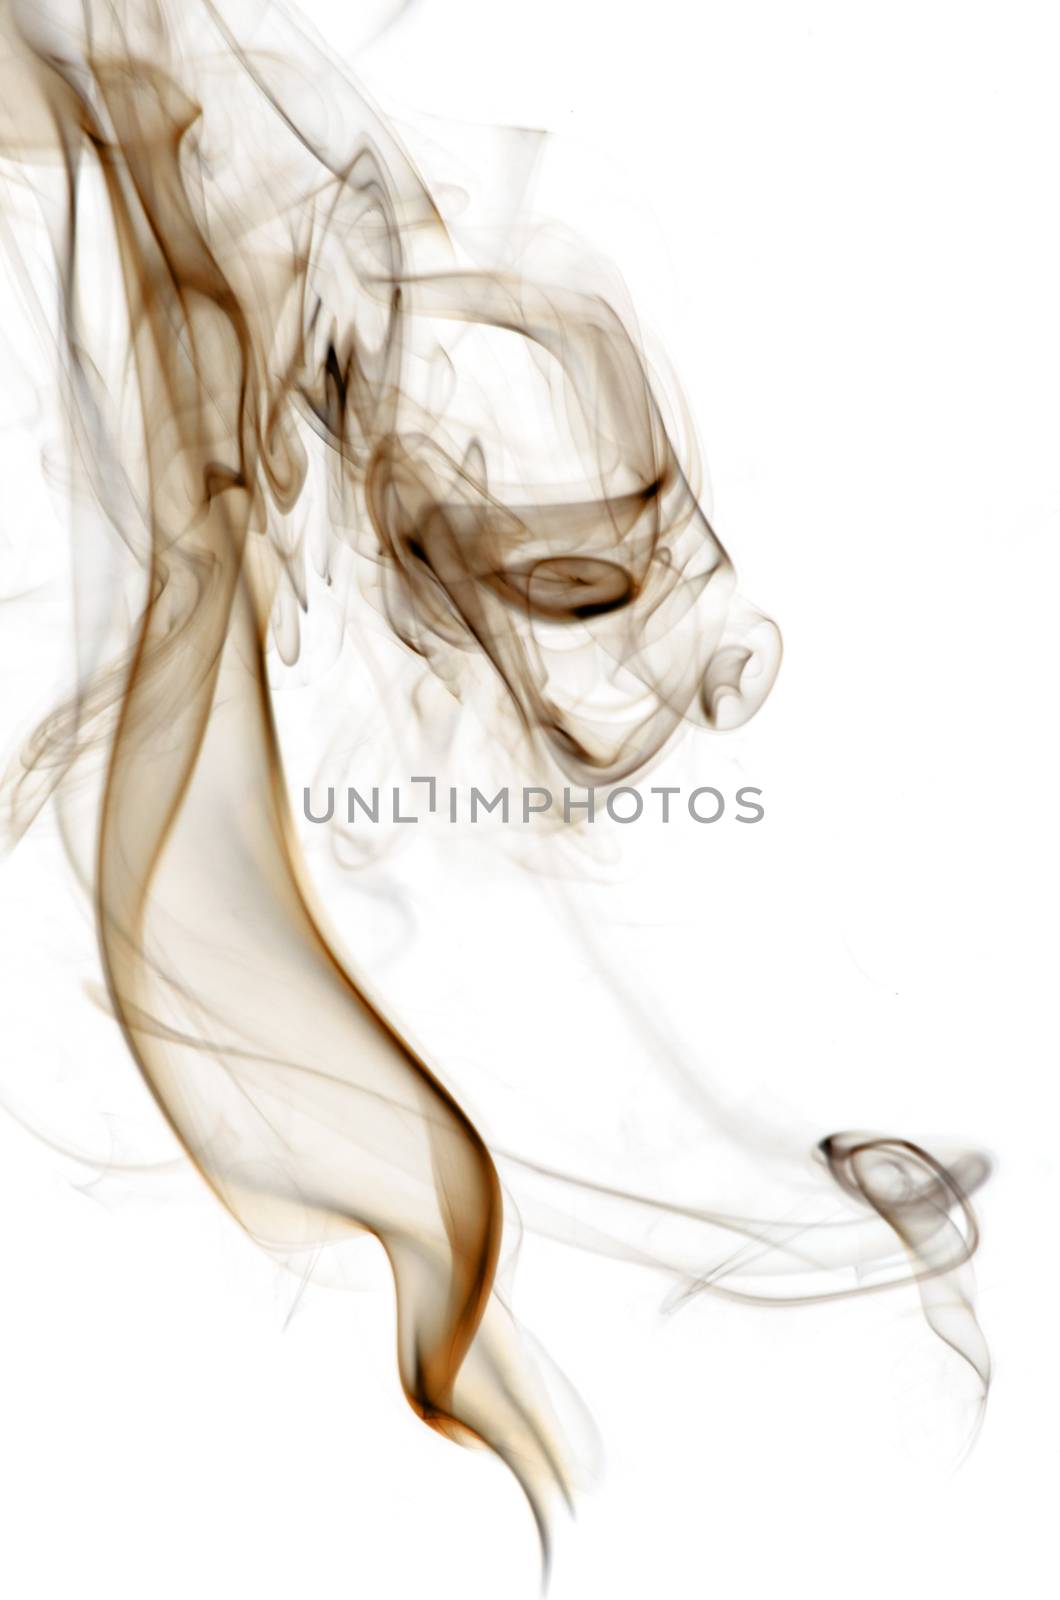 Insence smoke by richpav